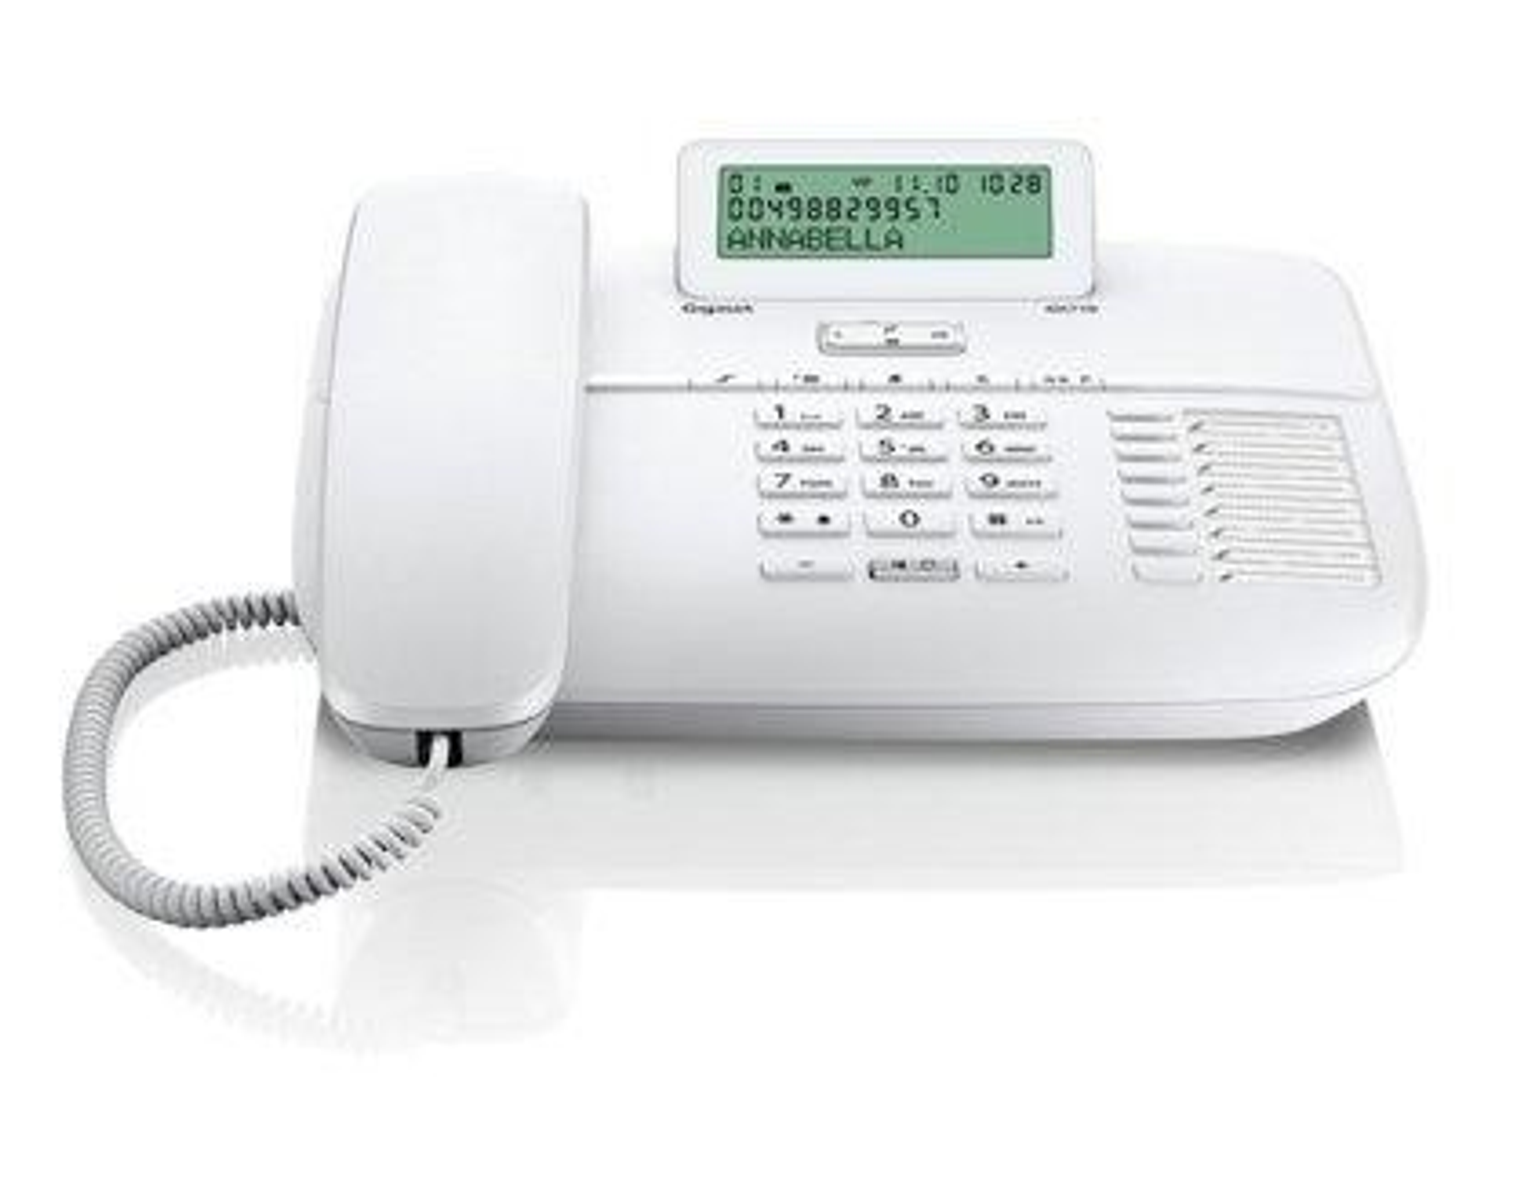 Fijo Gigaset Da710 blanco dect compacto da710b con manos libres para casa 710 telefono